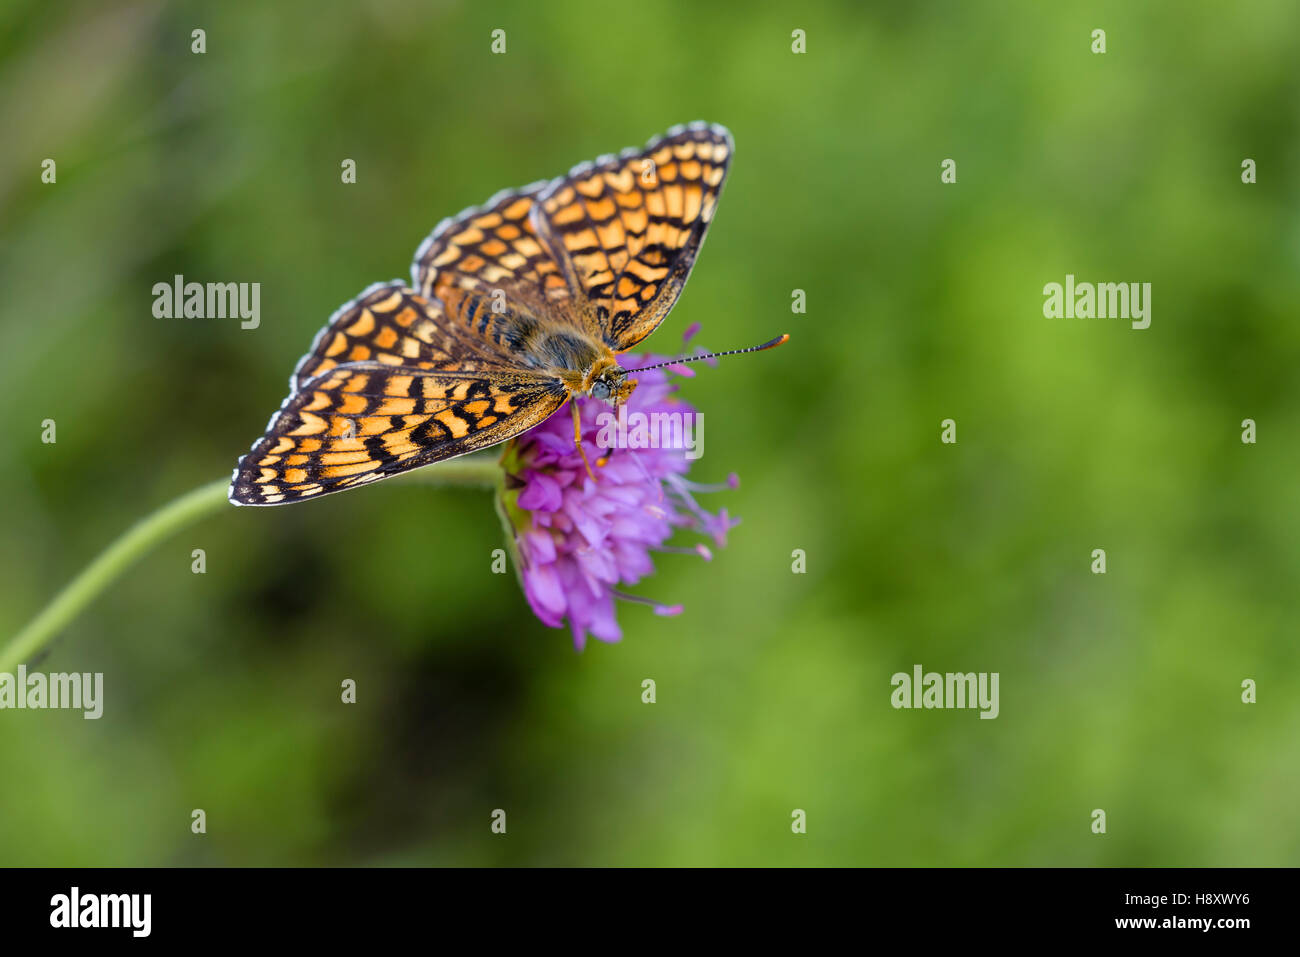 Flockenblumen Scheckenfalter, Melitaea phoebe, Knapweed Fritillary Butterfly Stock Photo